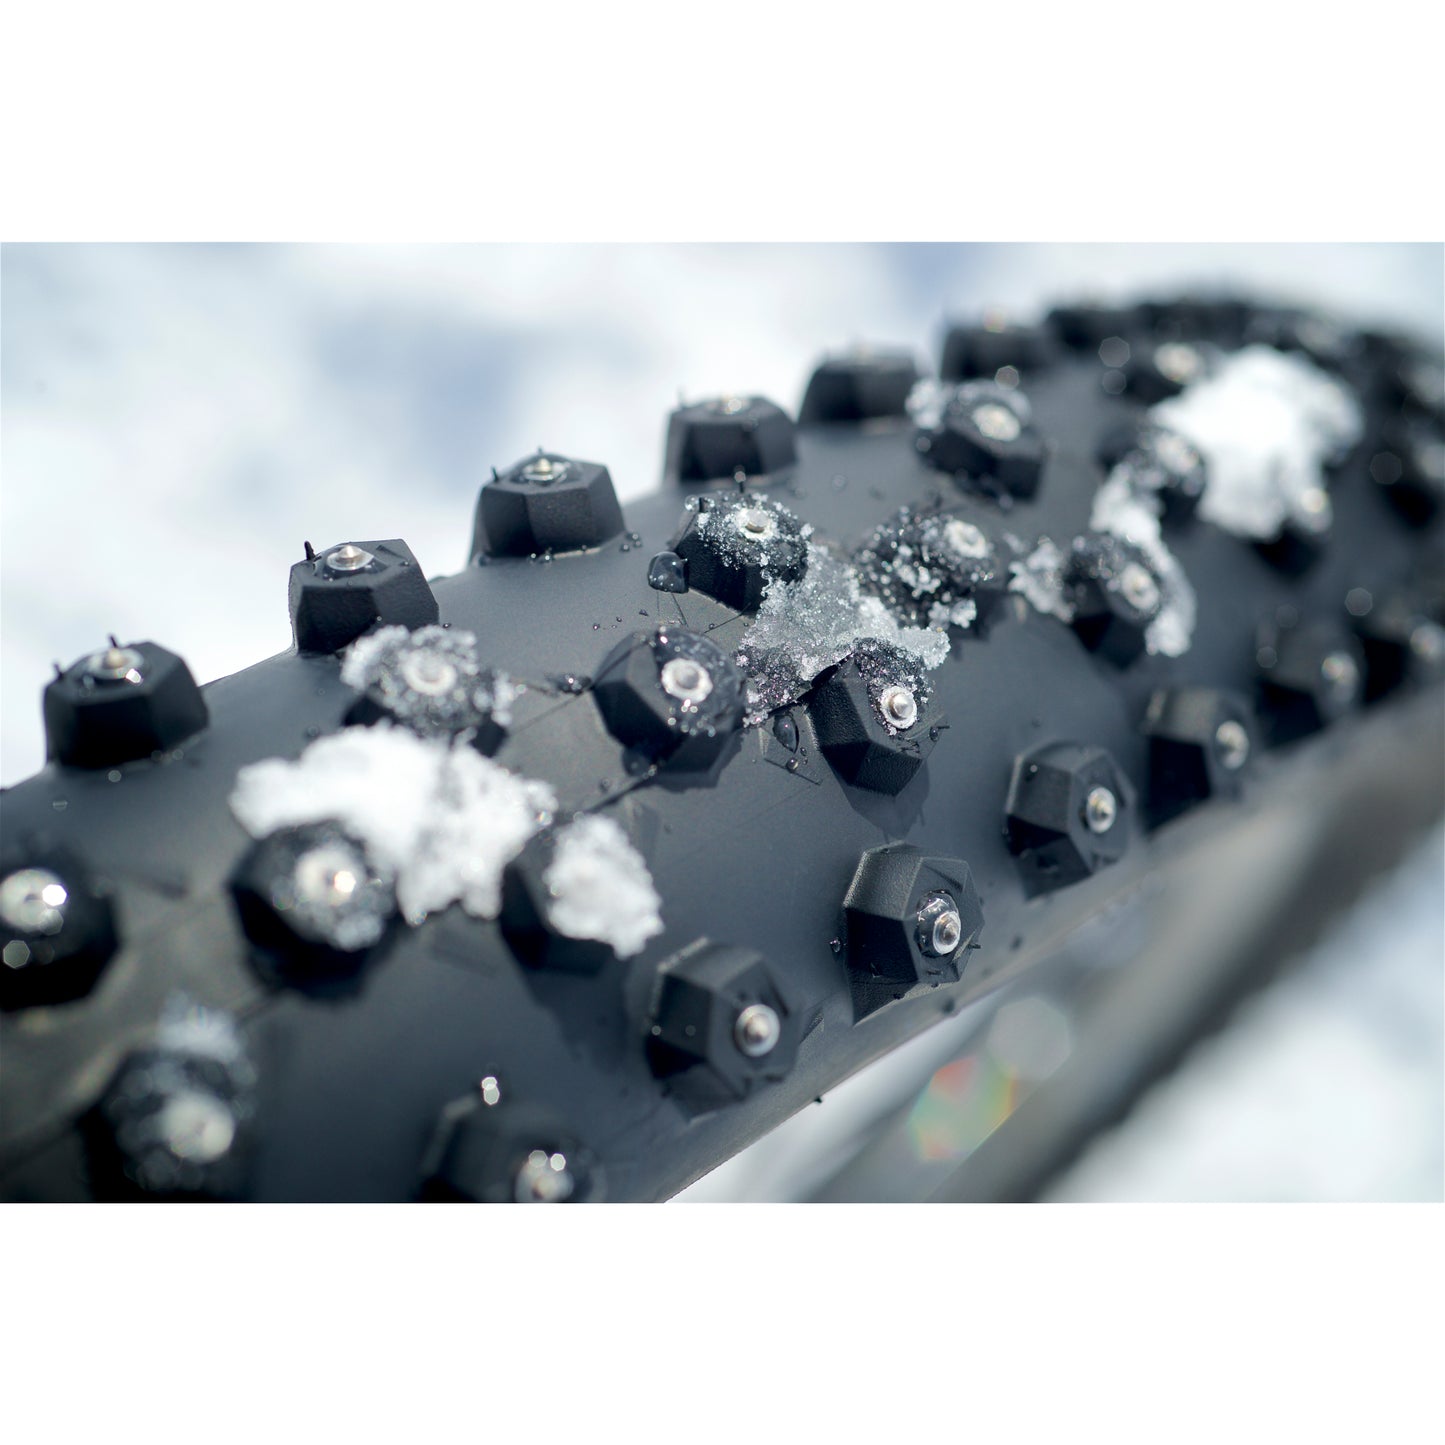 Покрышка Schwalbe Ice Spiker Pro с проволочным бортом — производительность | Зима | RaceGuard — 26x2,10 дюйма | Черный 